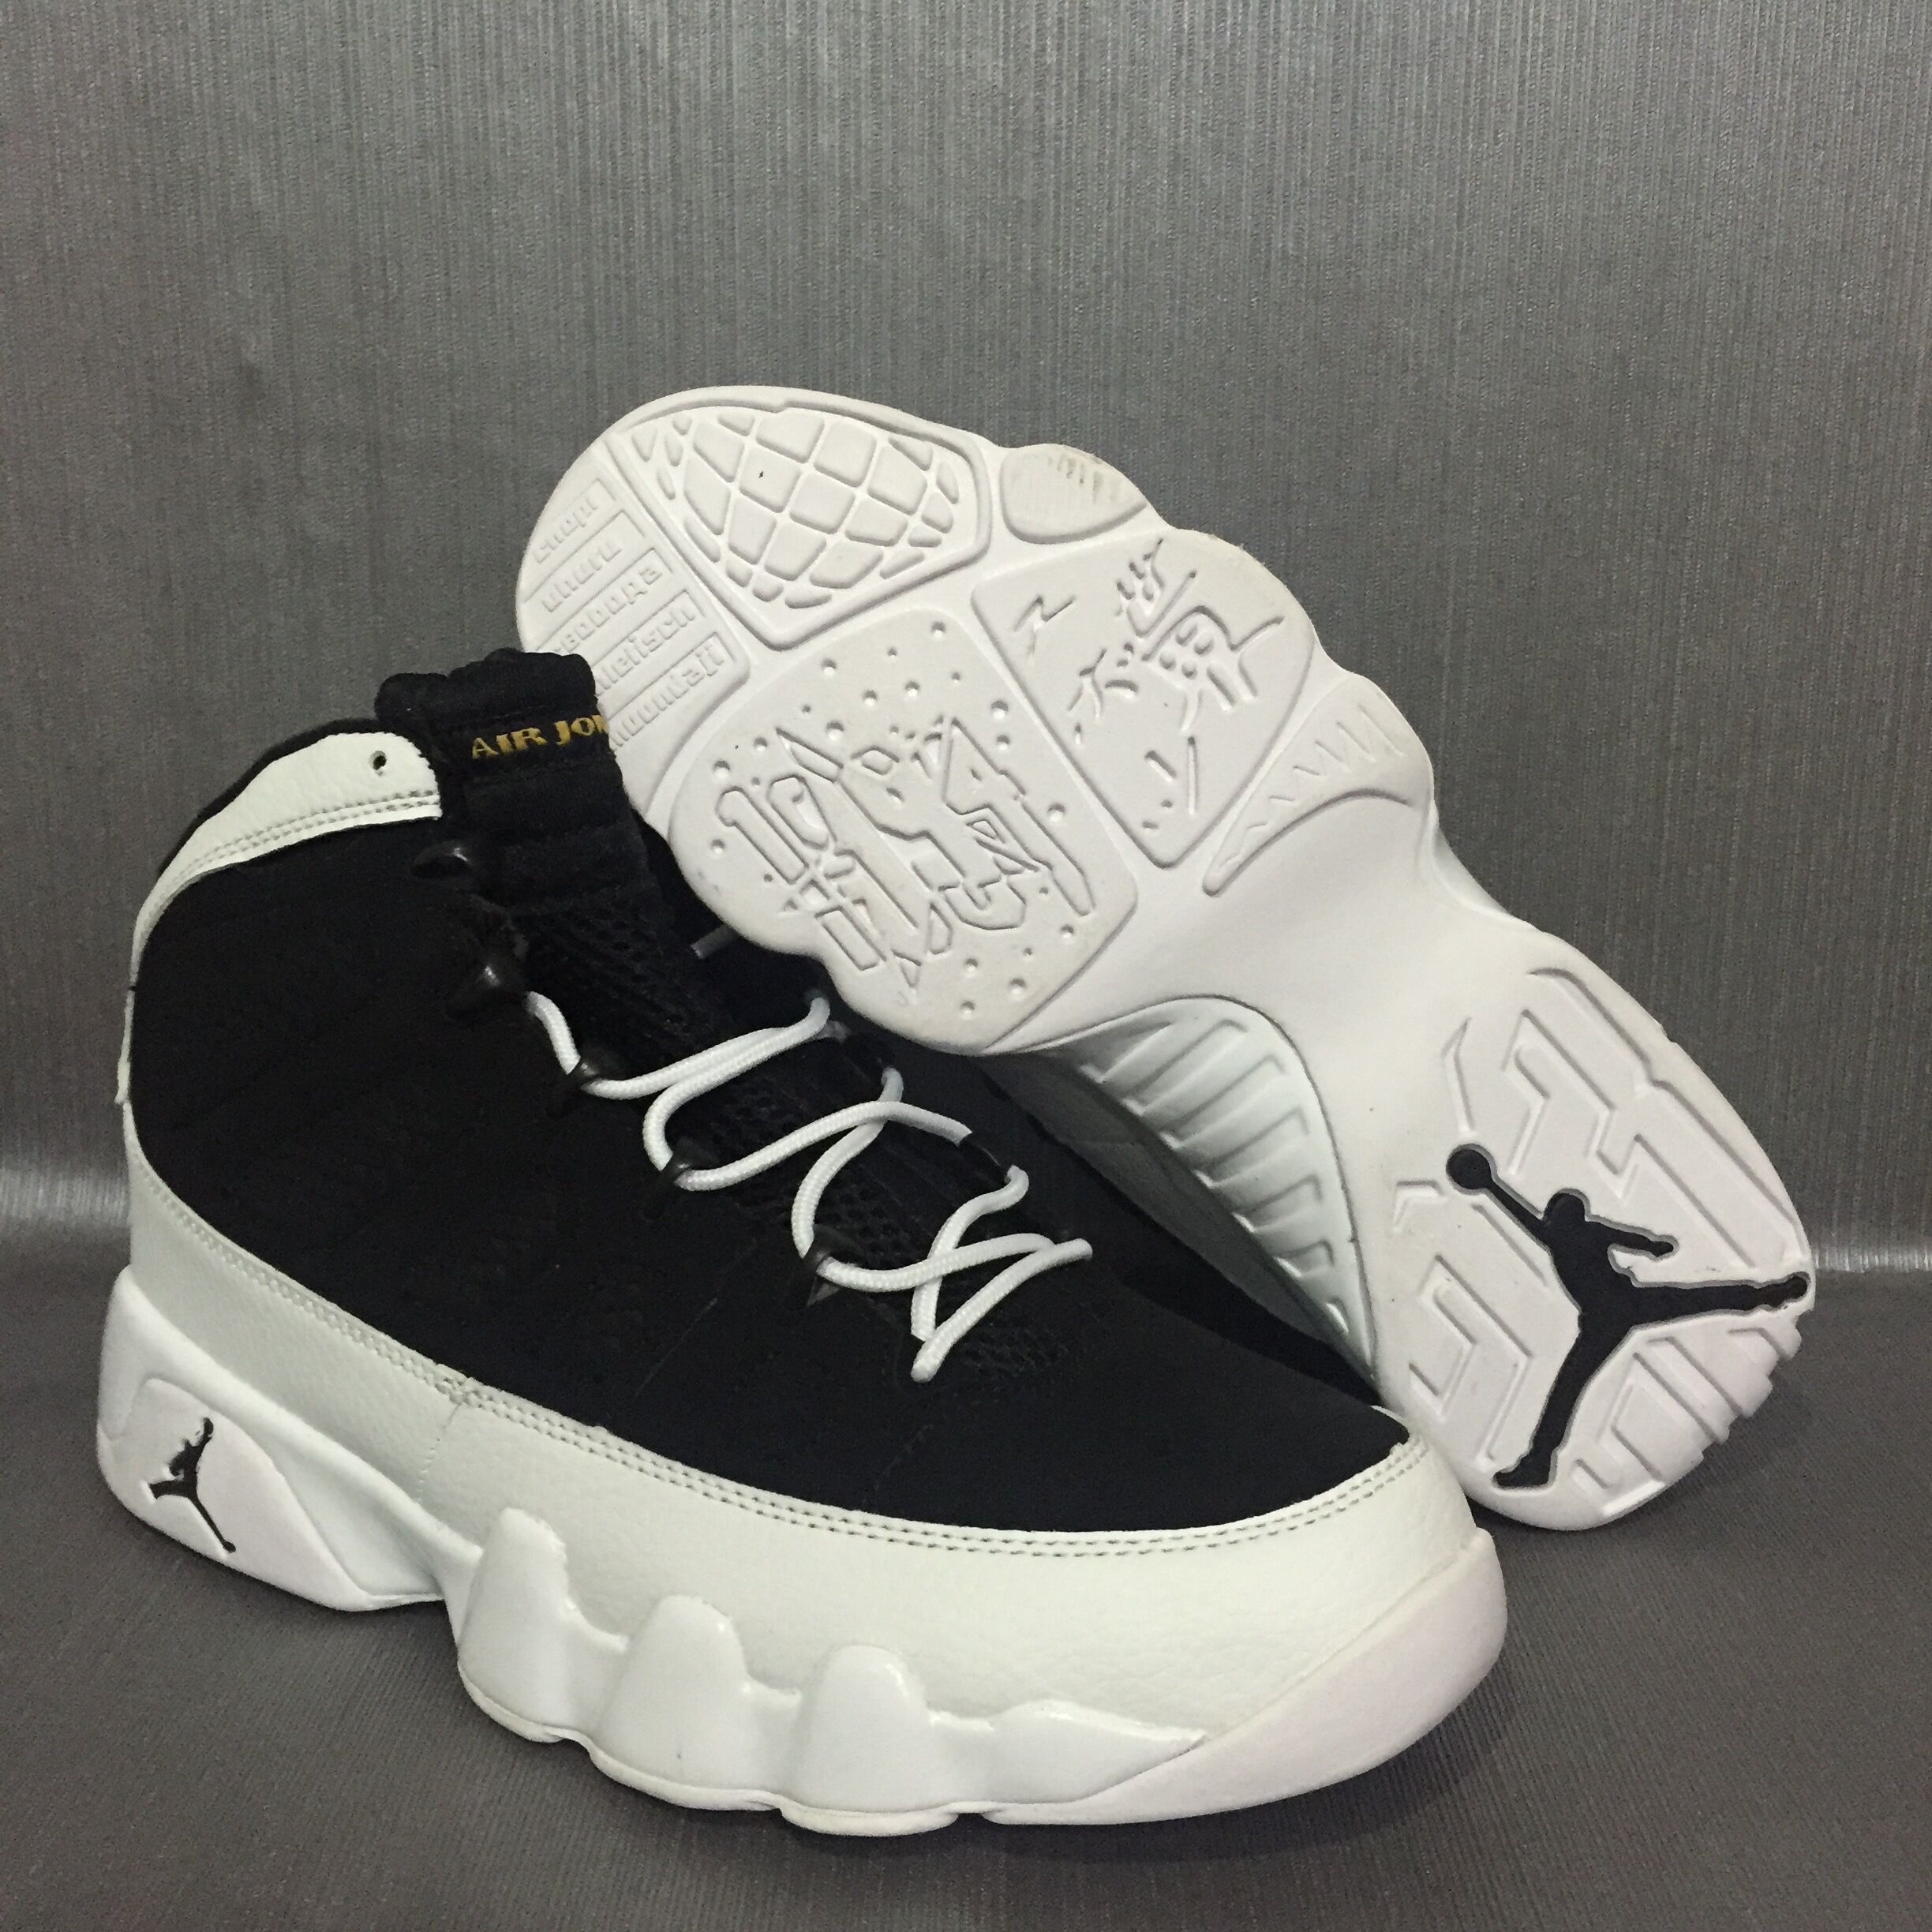 New Air Jordan 9 Oreo Shoes [17OG102716 